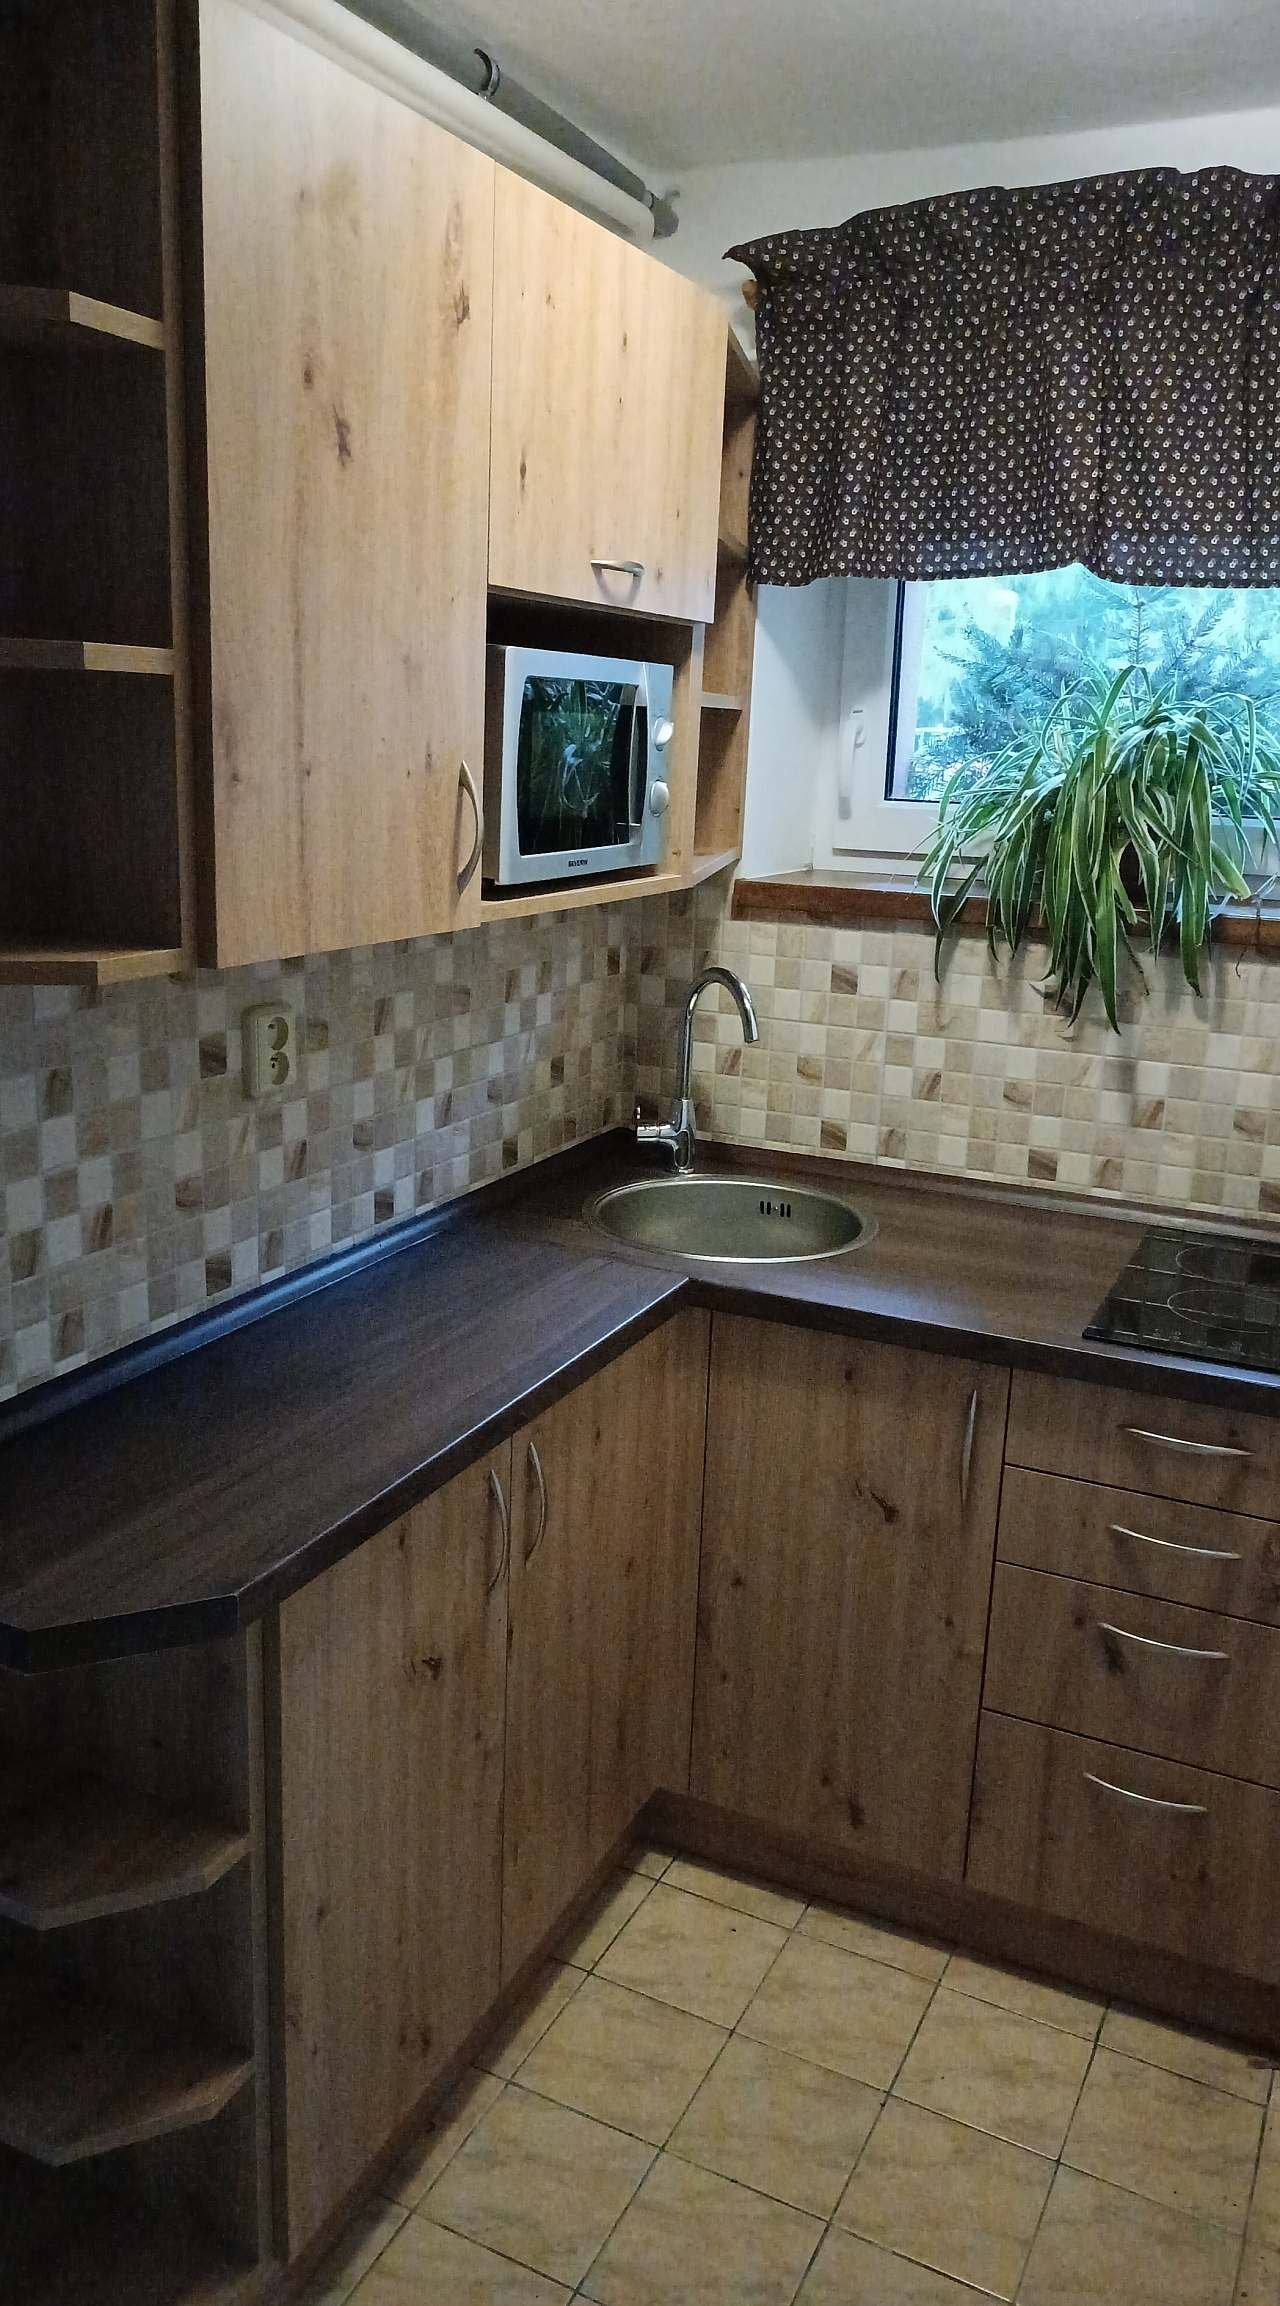 Kuchyňka 4 lůžkový pokoj